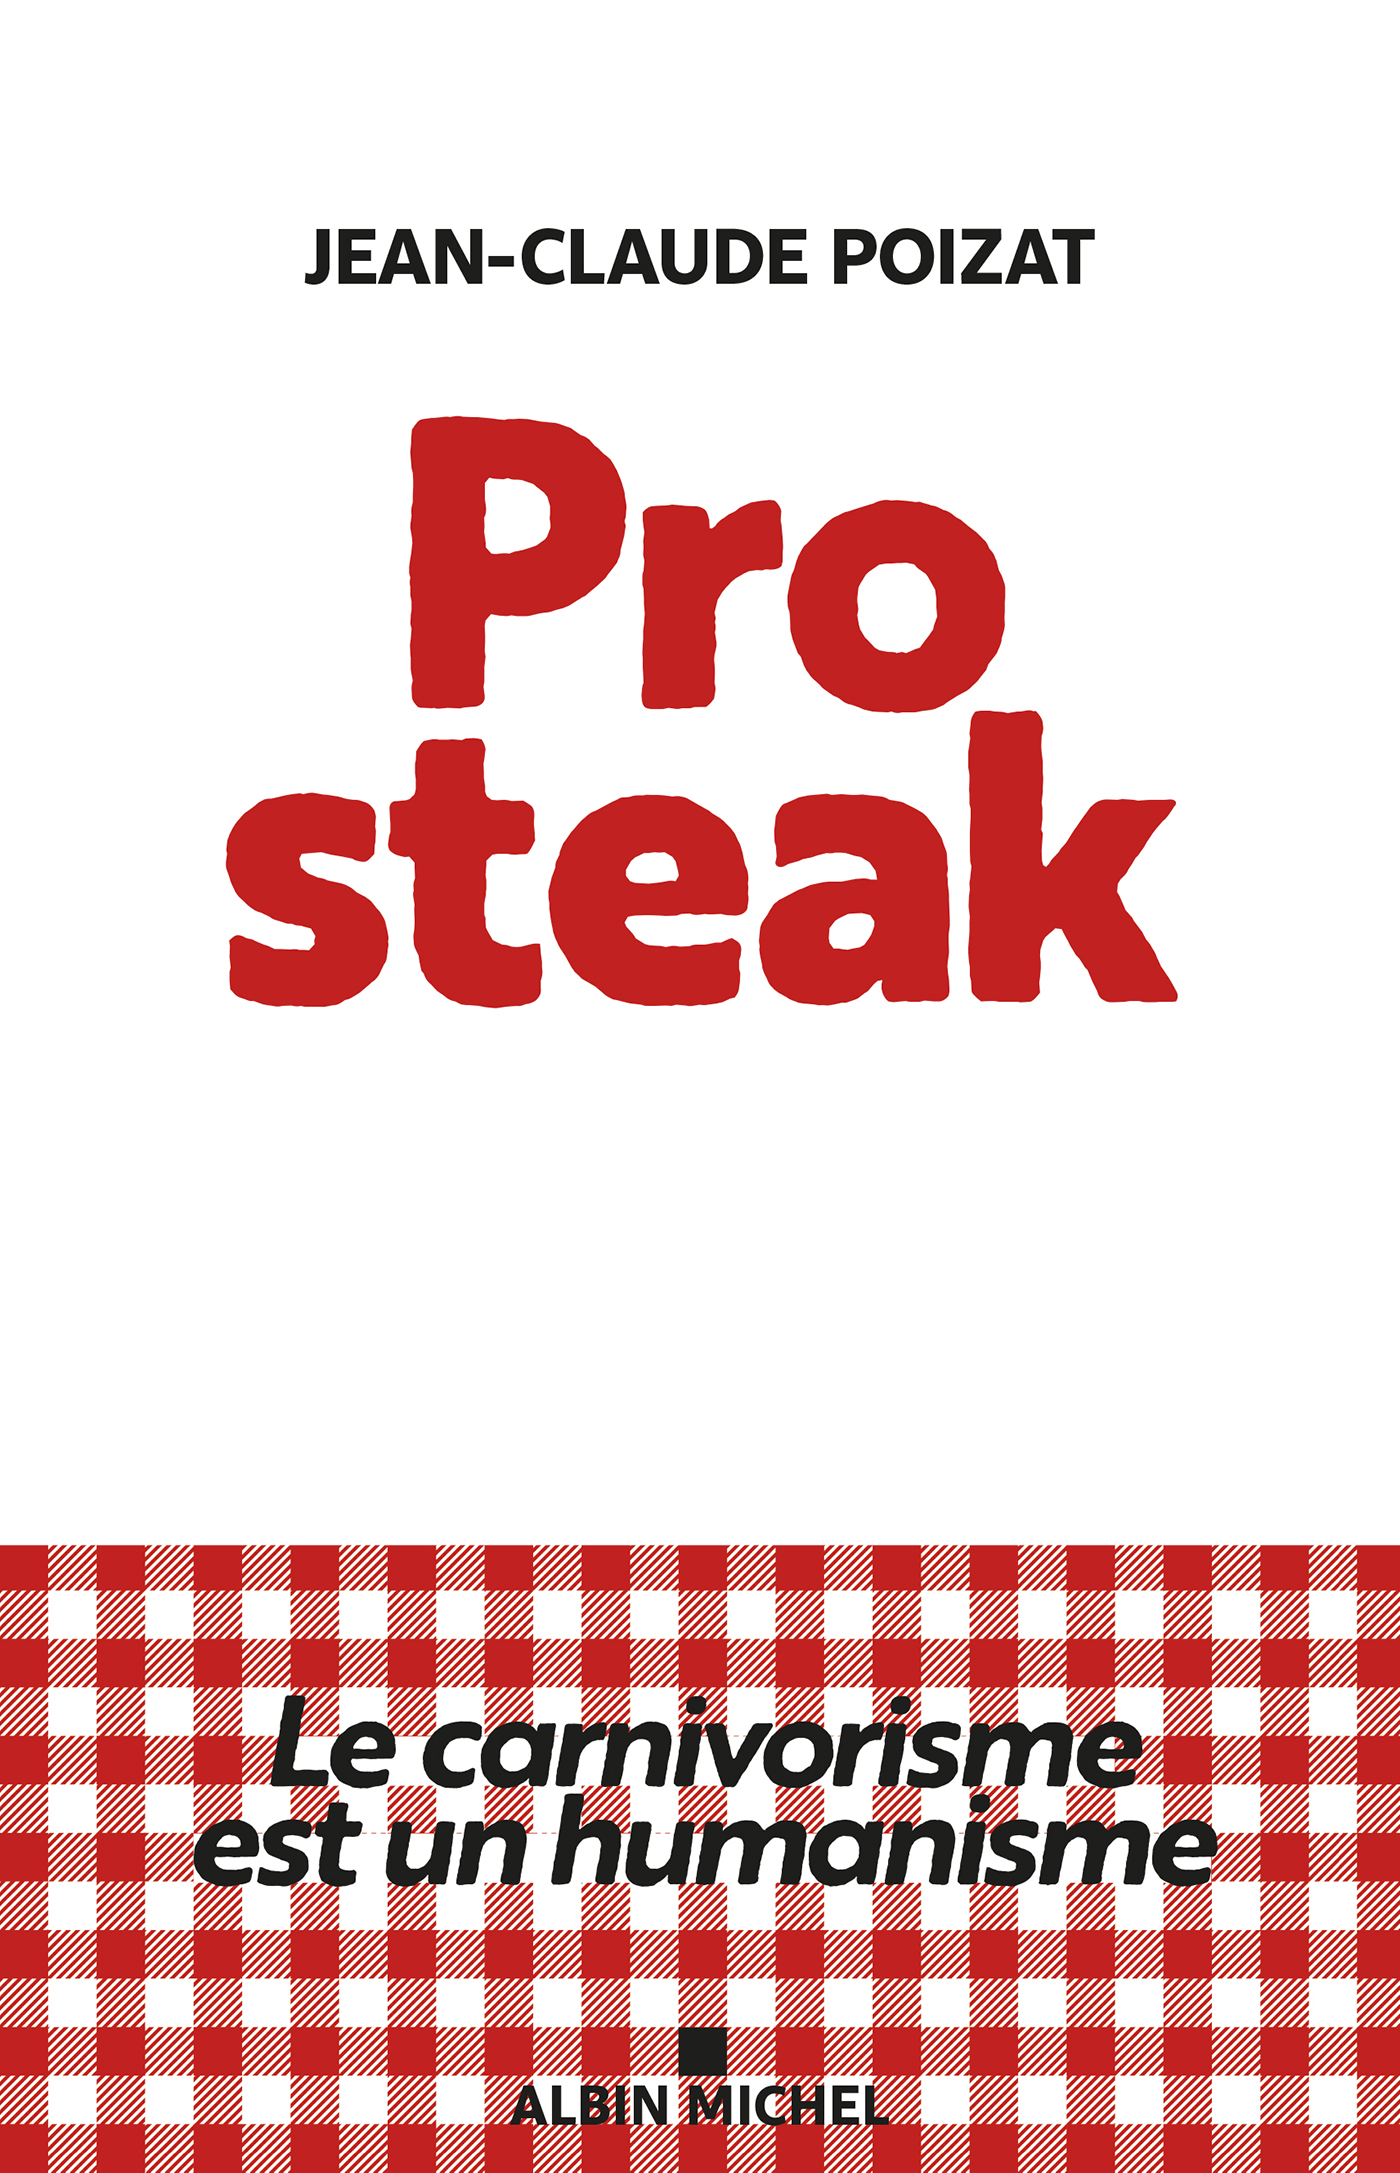 Couverture du livre Pro steak